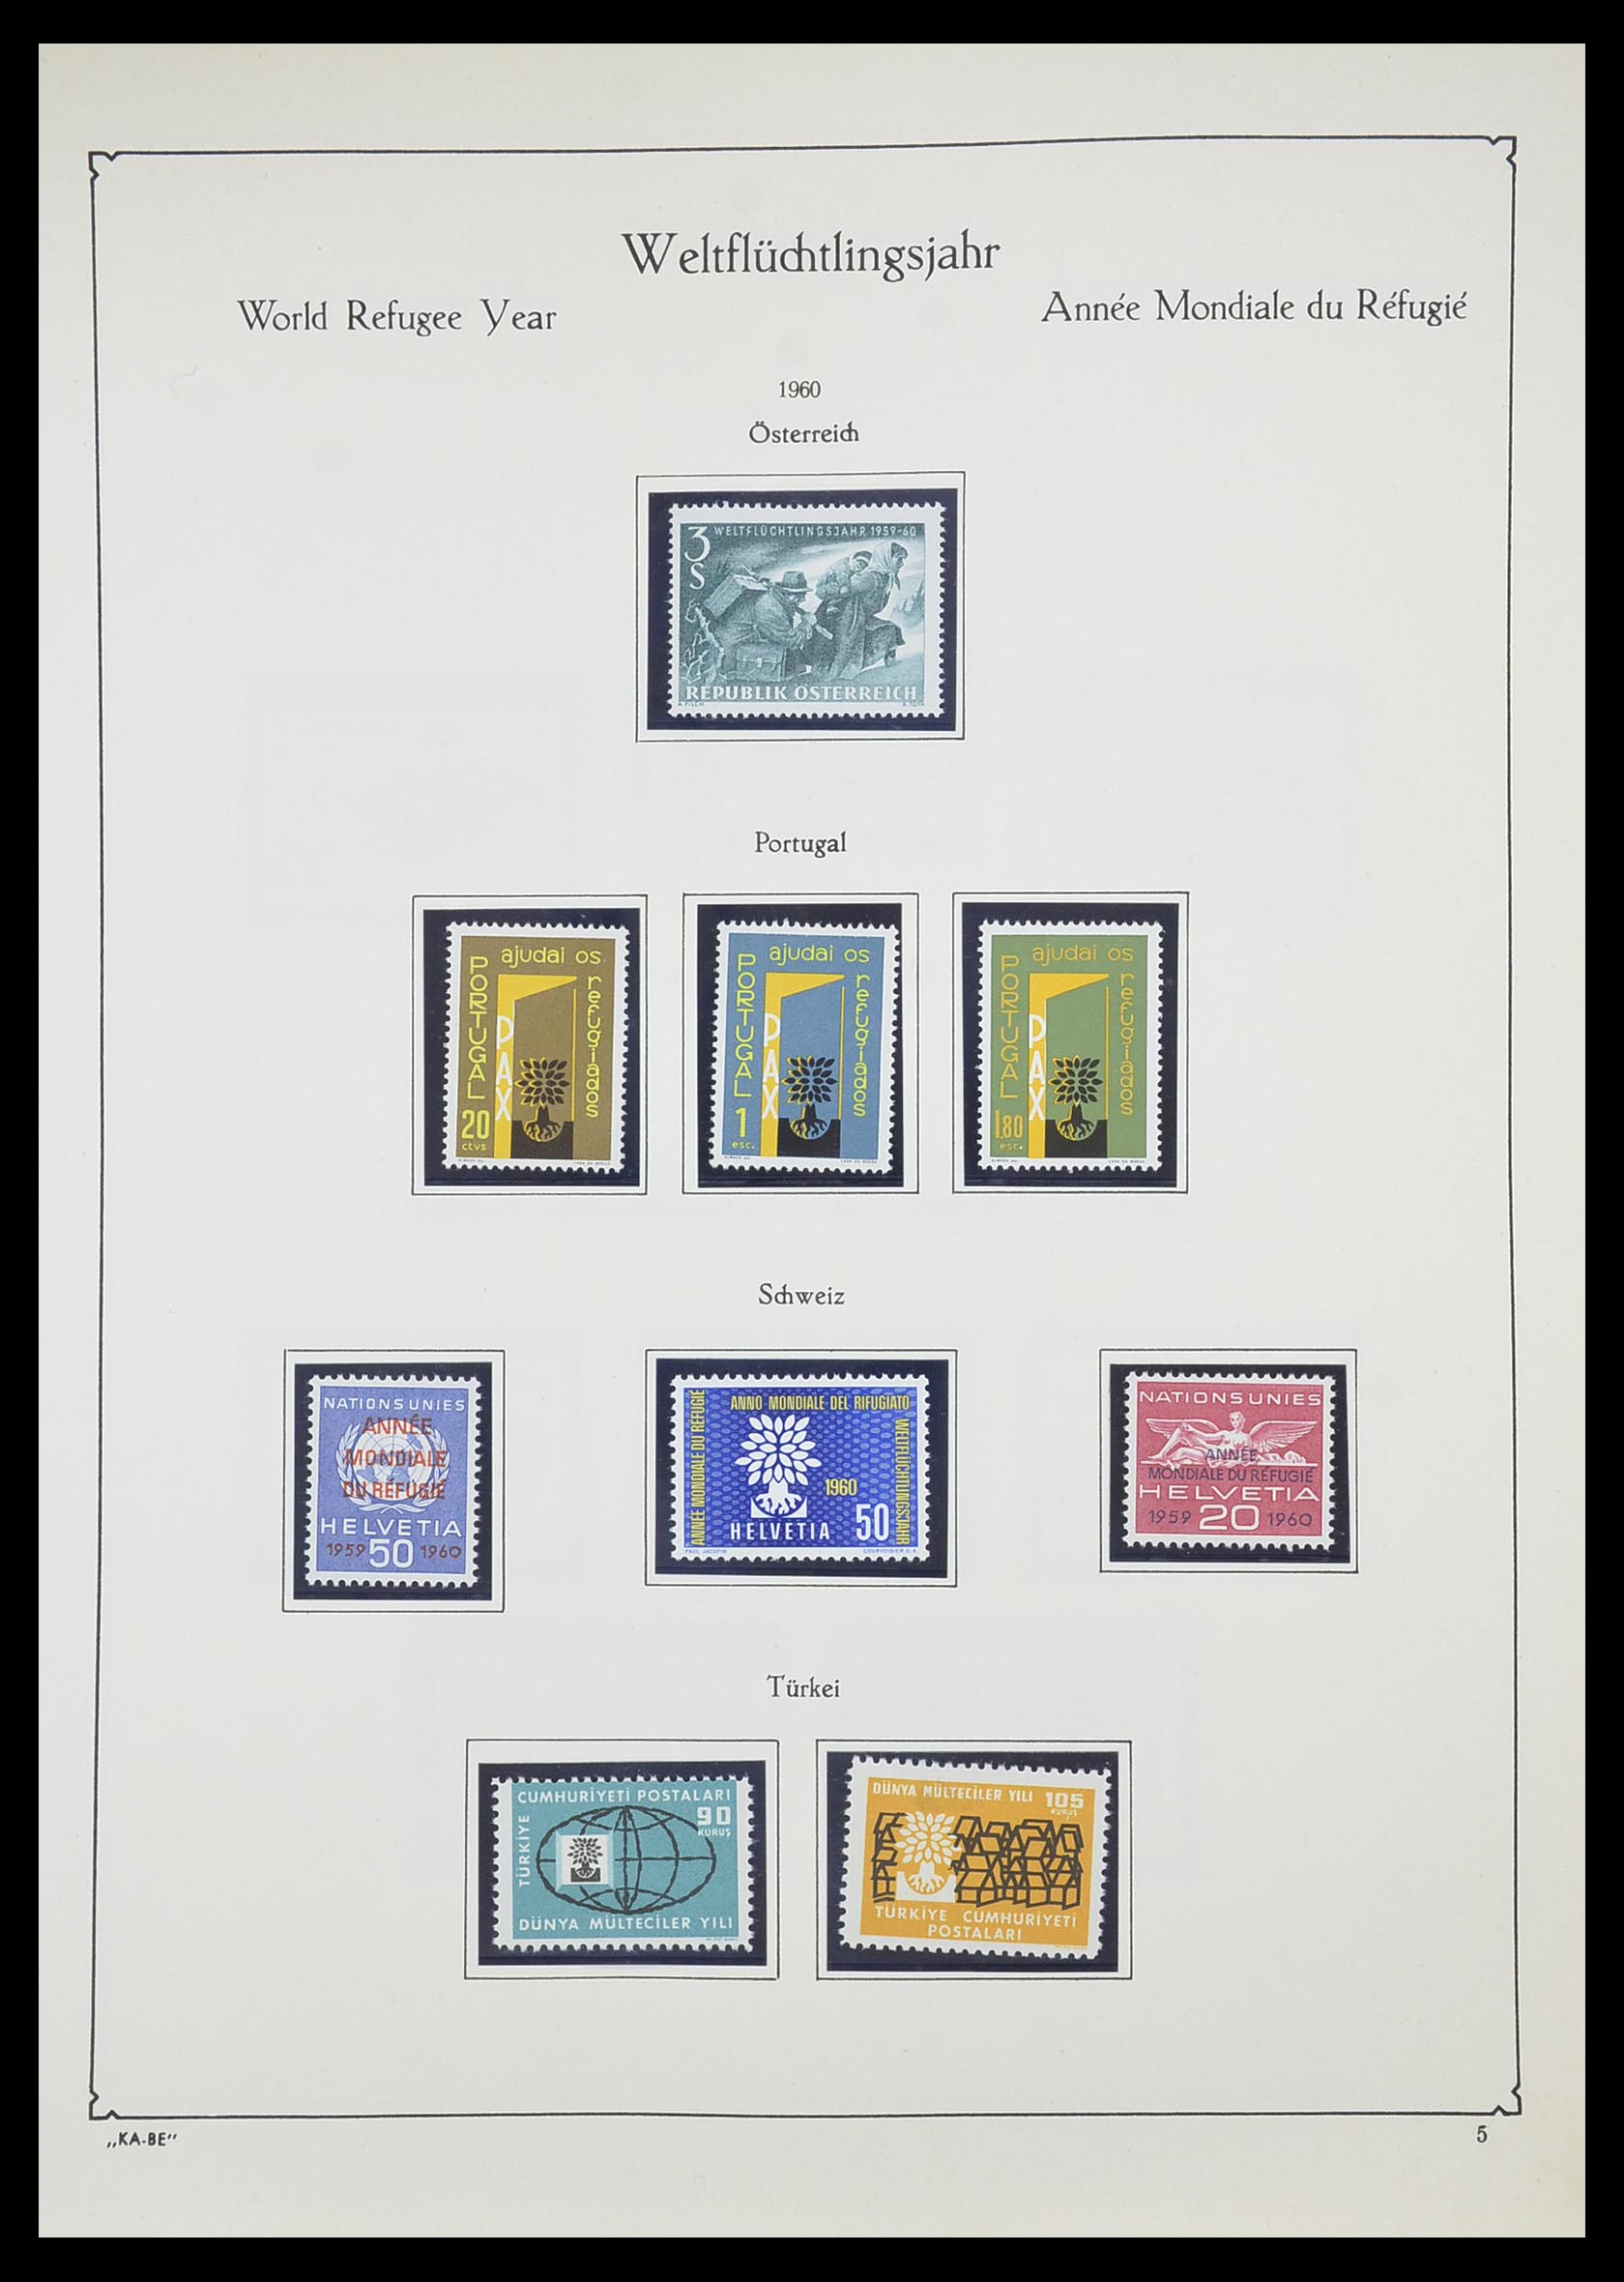 33747 070 - Postzegelverzameling 33747 Diverse motieven 1958-1986.